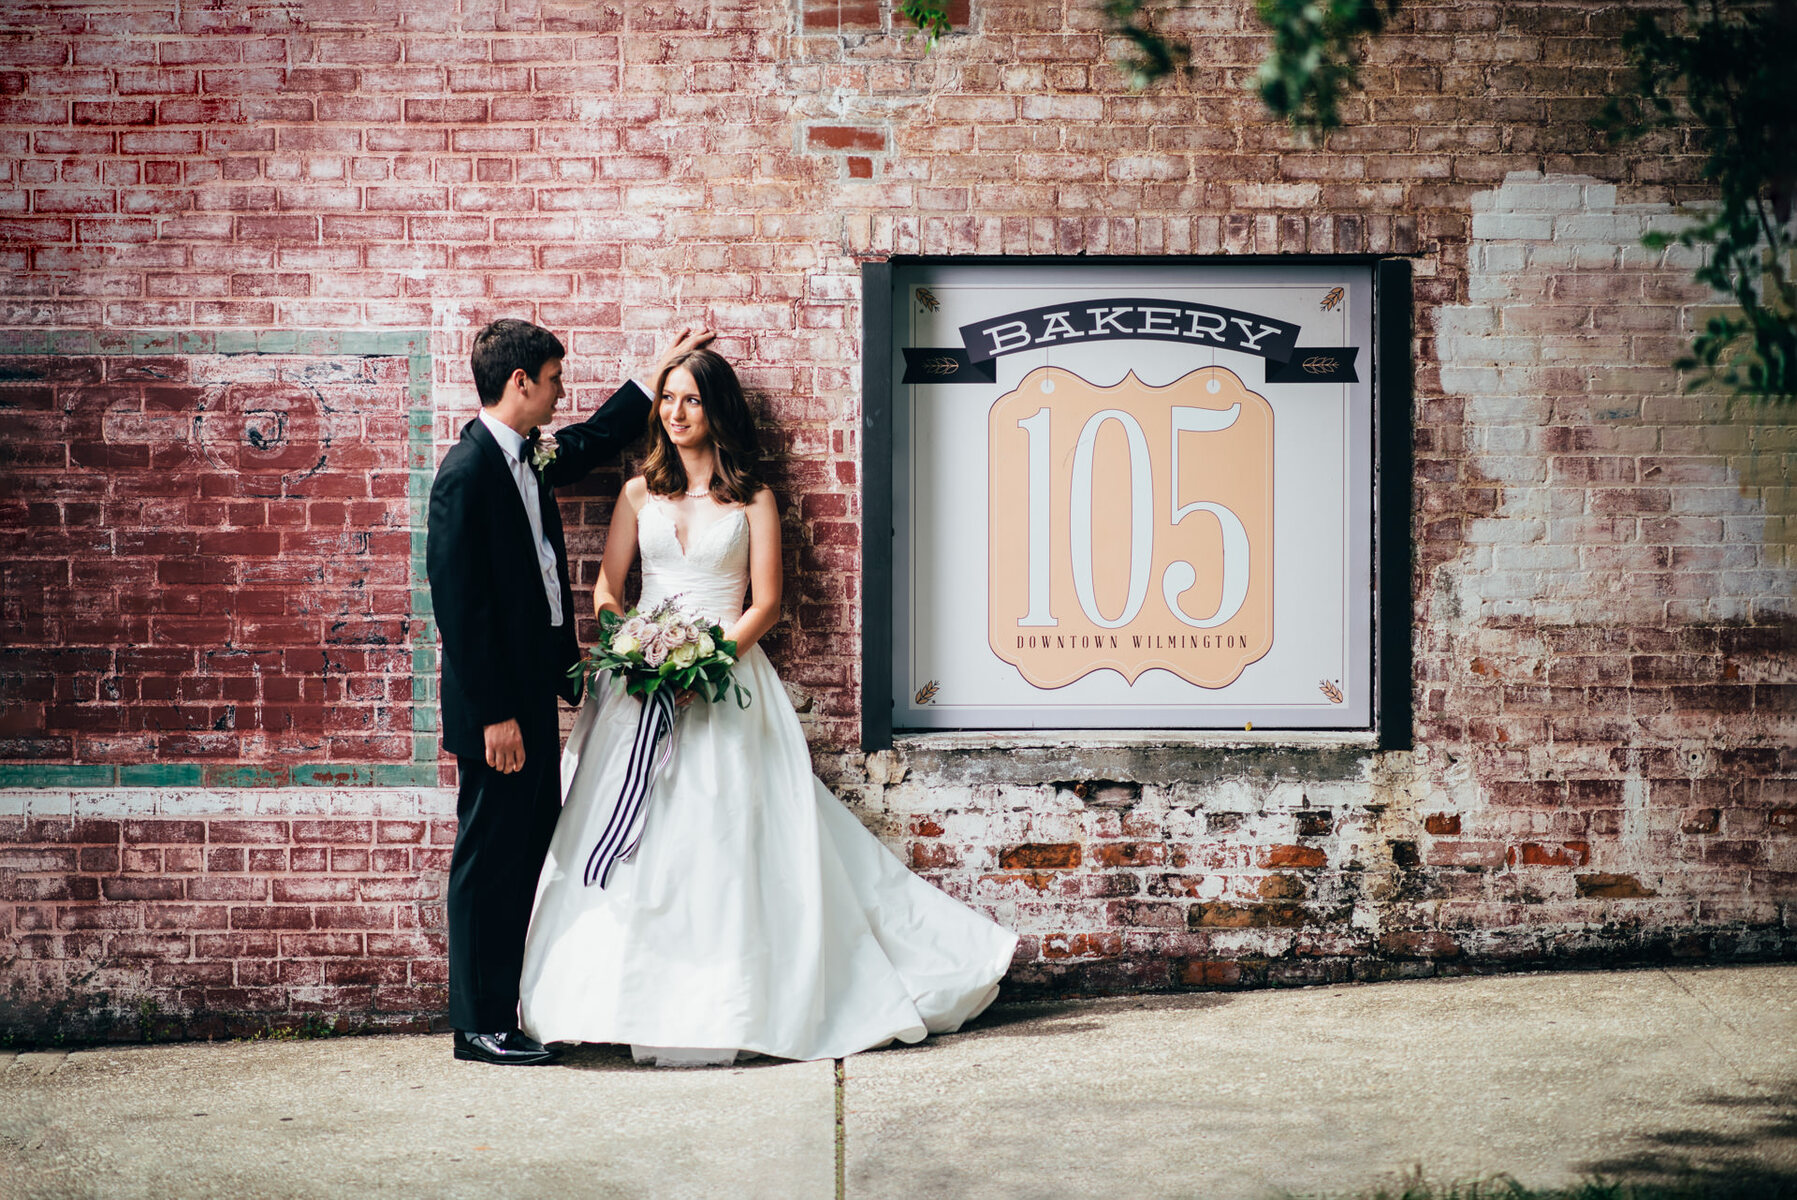 Wedding Photography Wilmington NC - Bakery 105